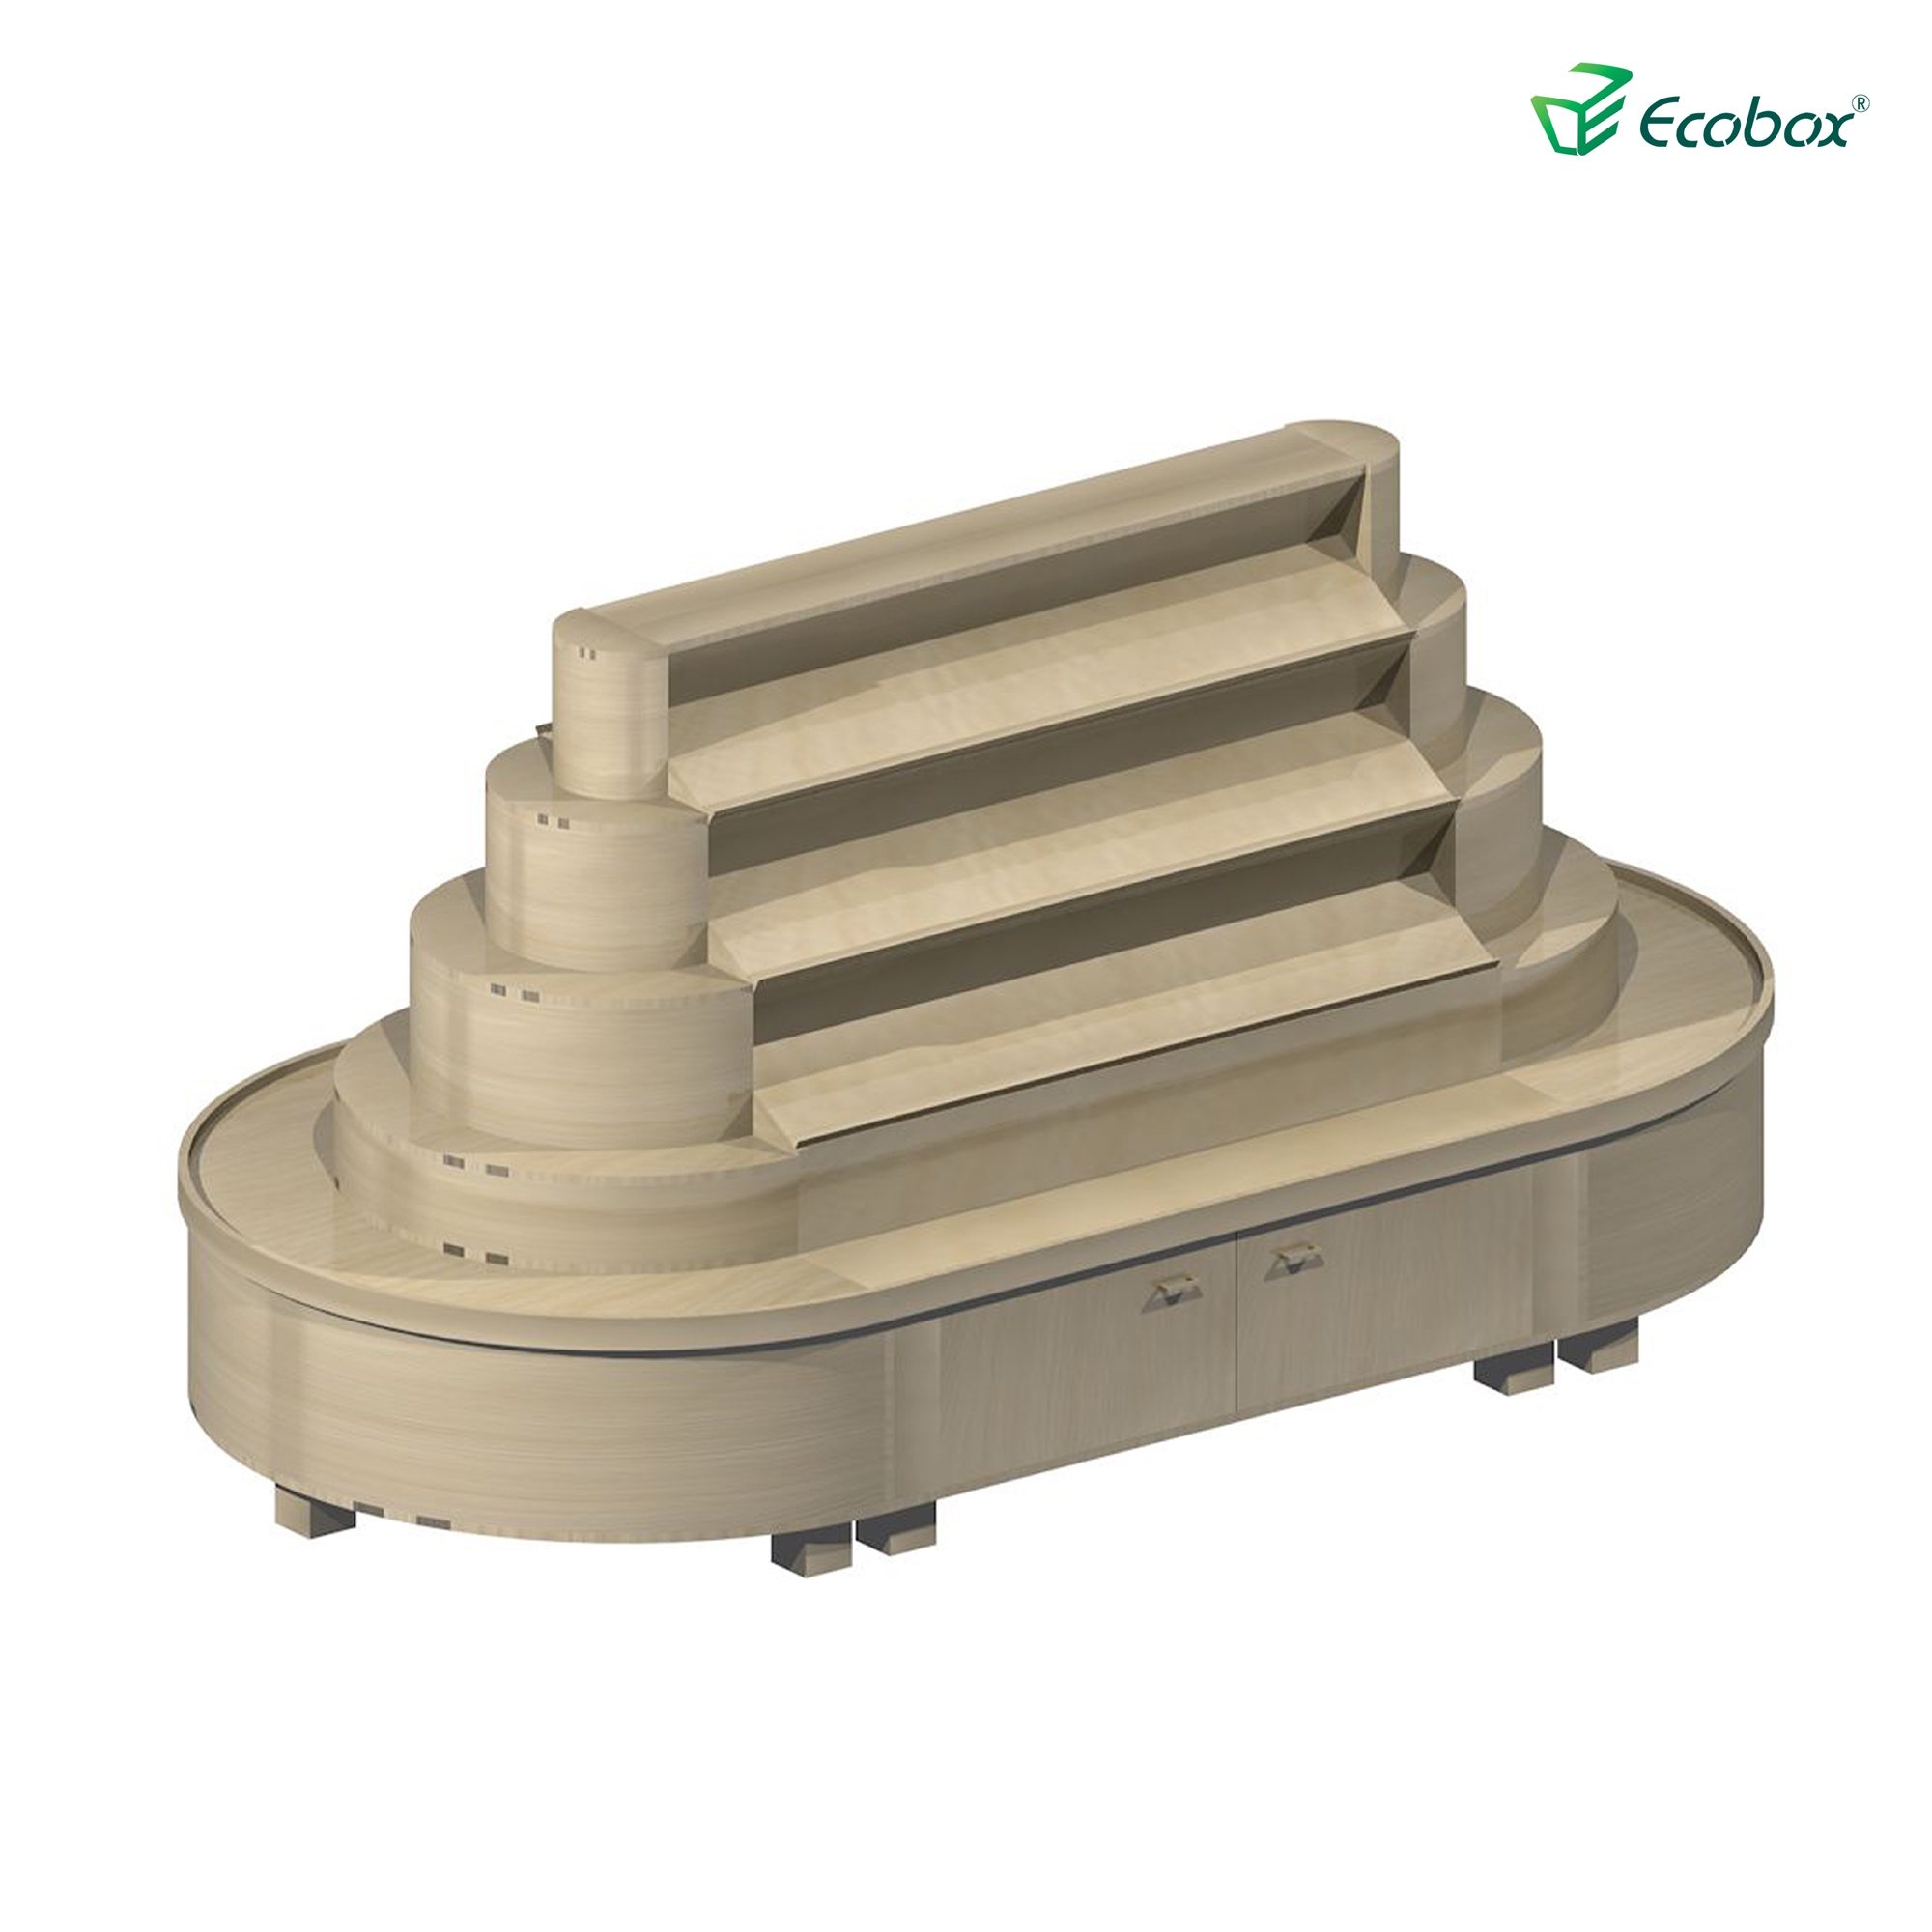 Rundes Regal der Ecobox G002-Serie mit Ecobox-Großbehältern für Supermärkte